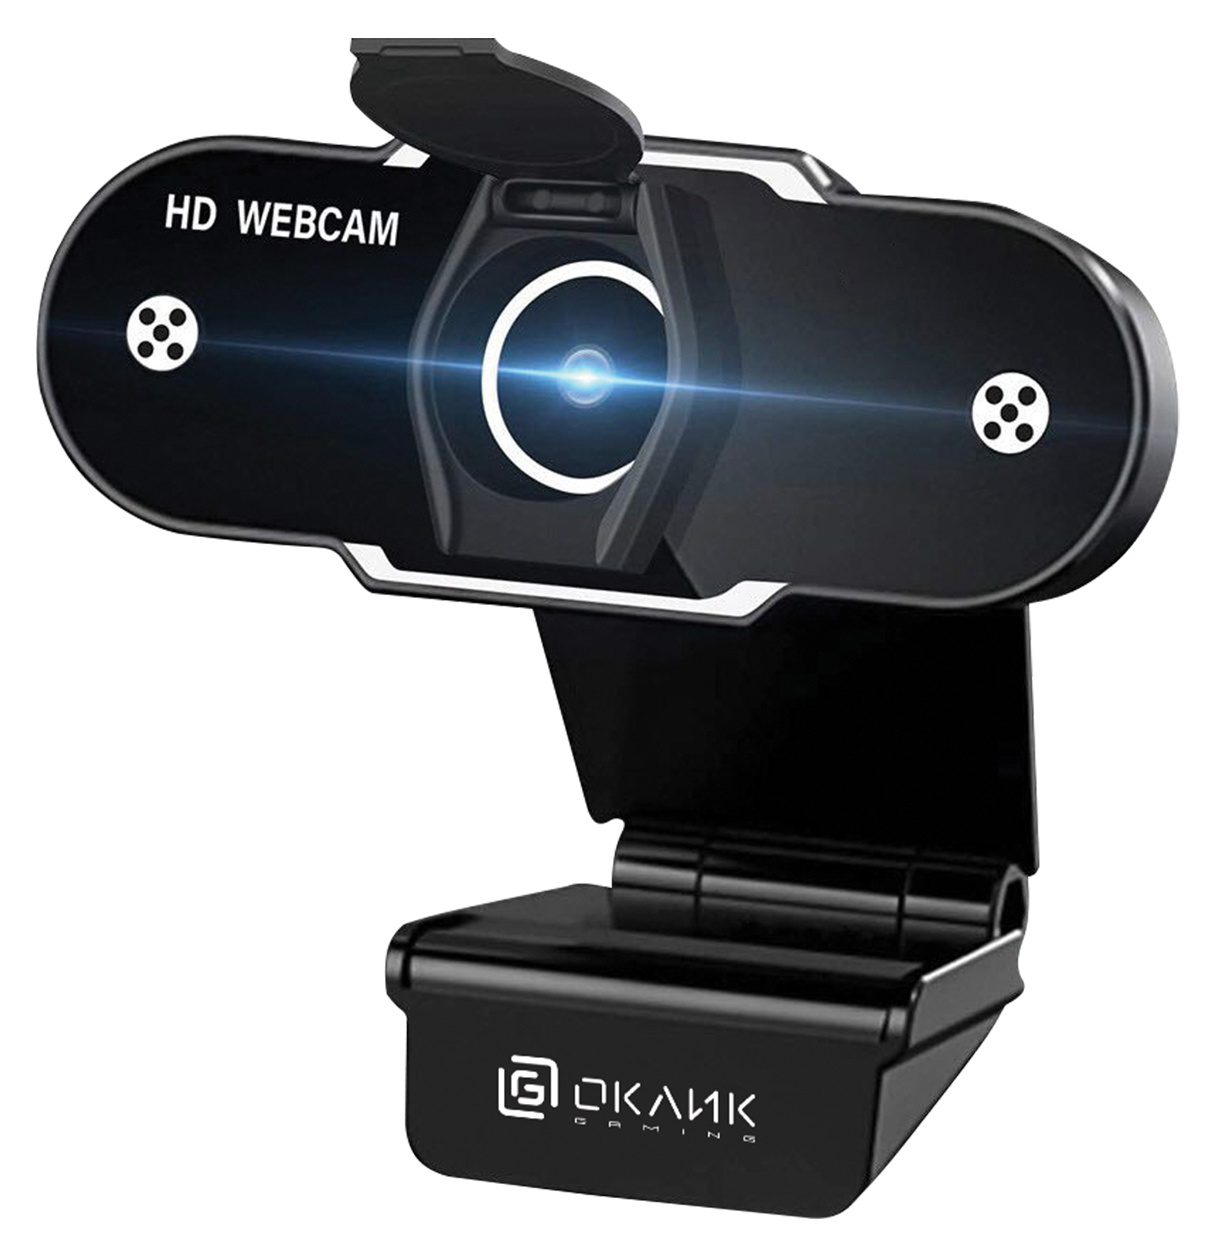 Вебкамера OKLICK OK-C012HD, 1 MP, 1280x720, встроенный микрофон, USB 2.0, черный (1455503)